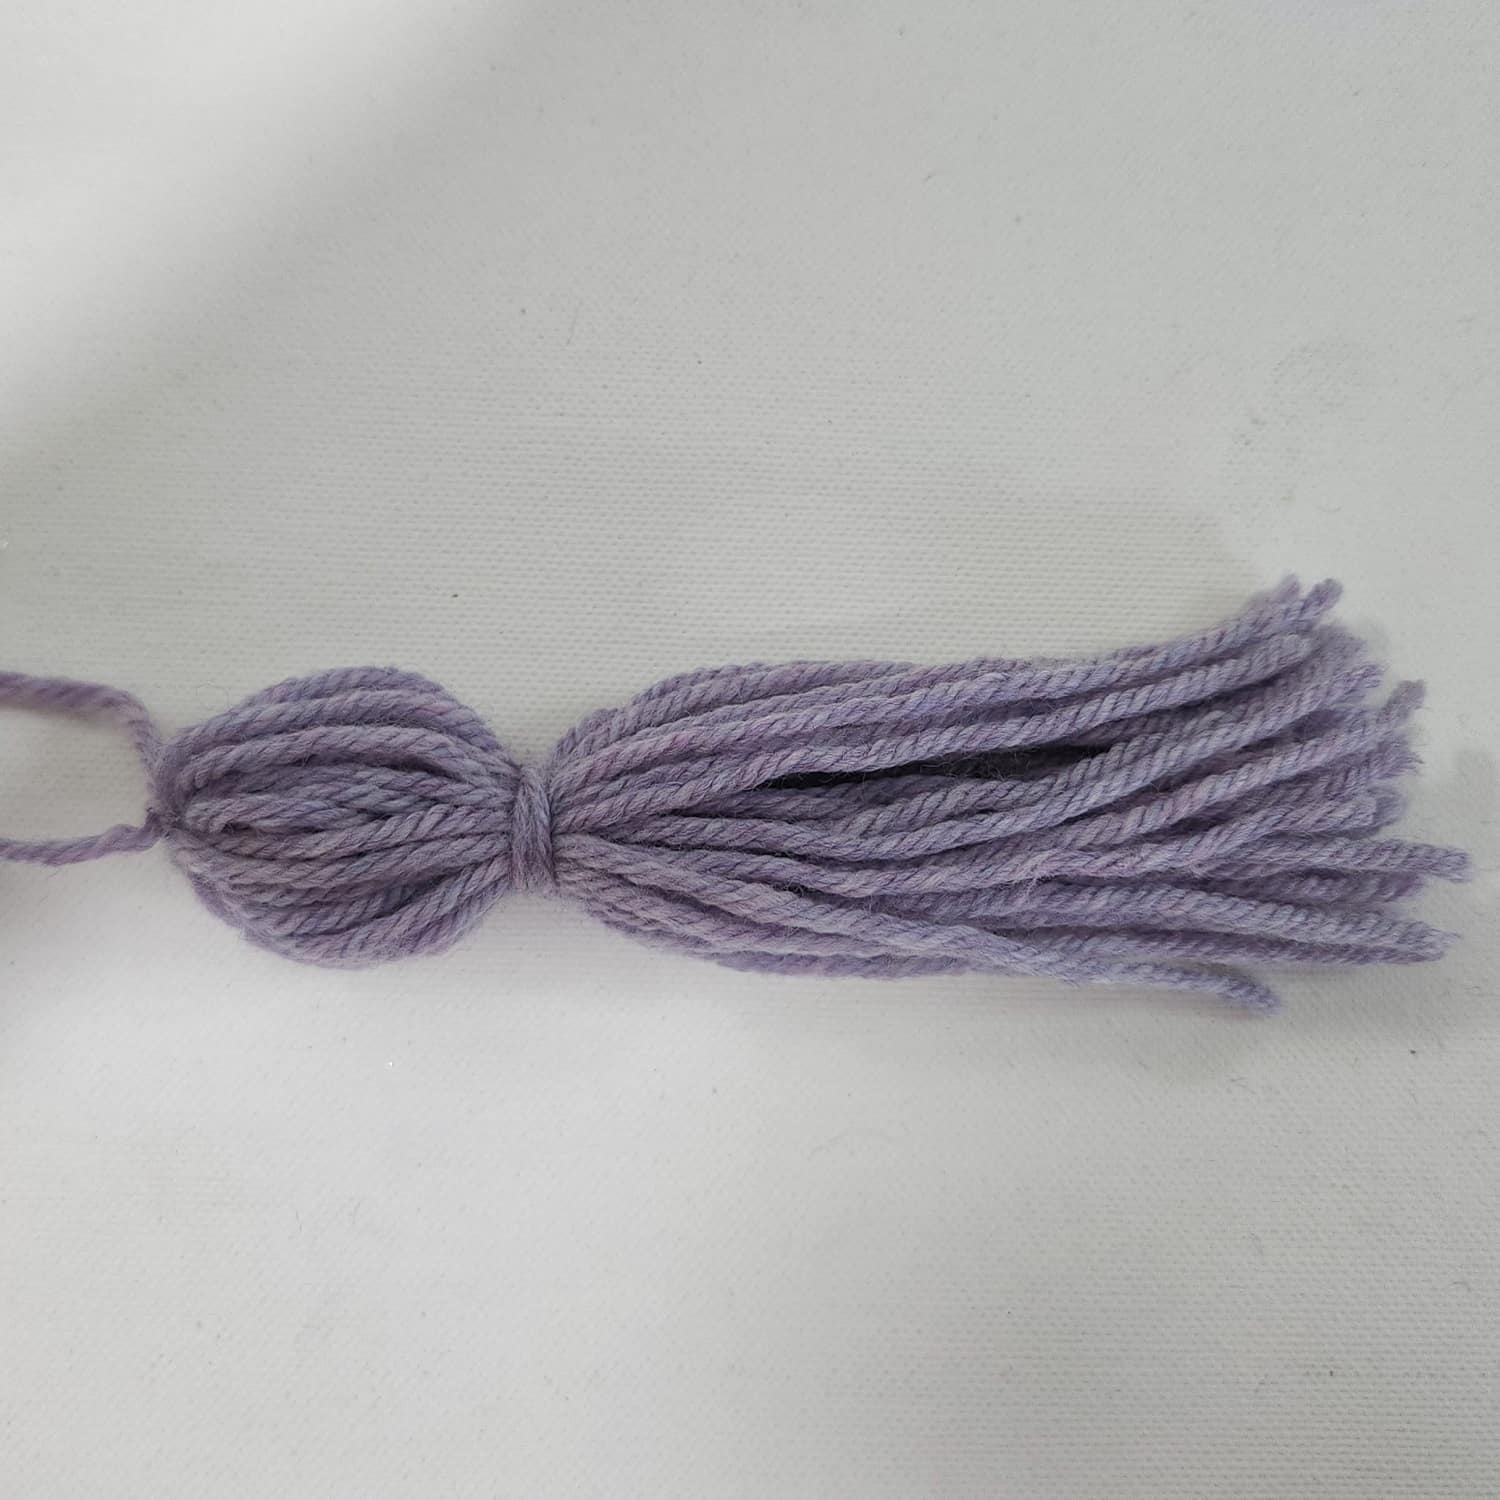 crochet tassels made by gootie